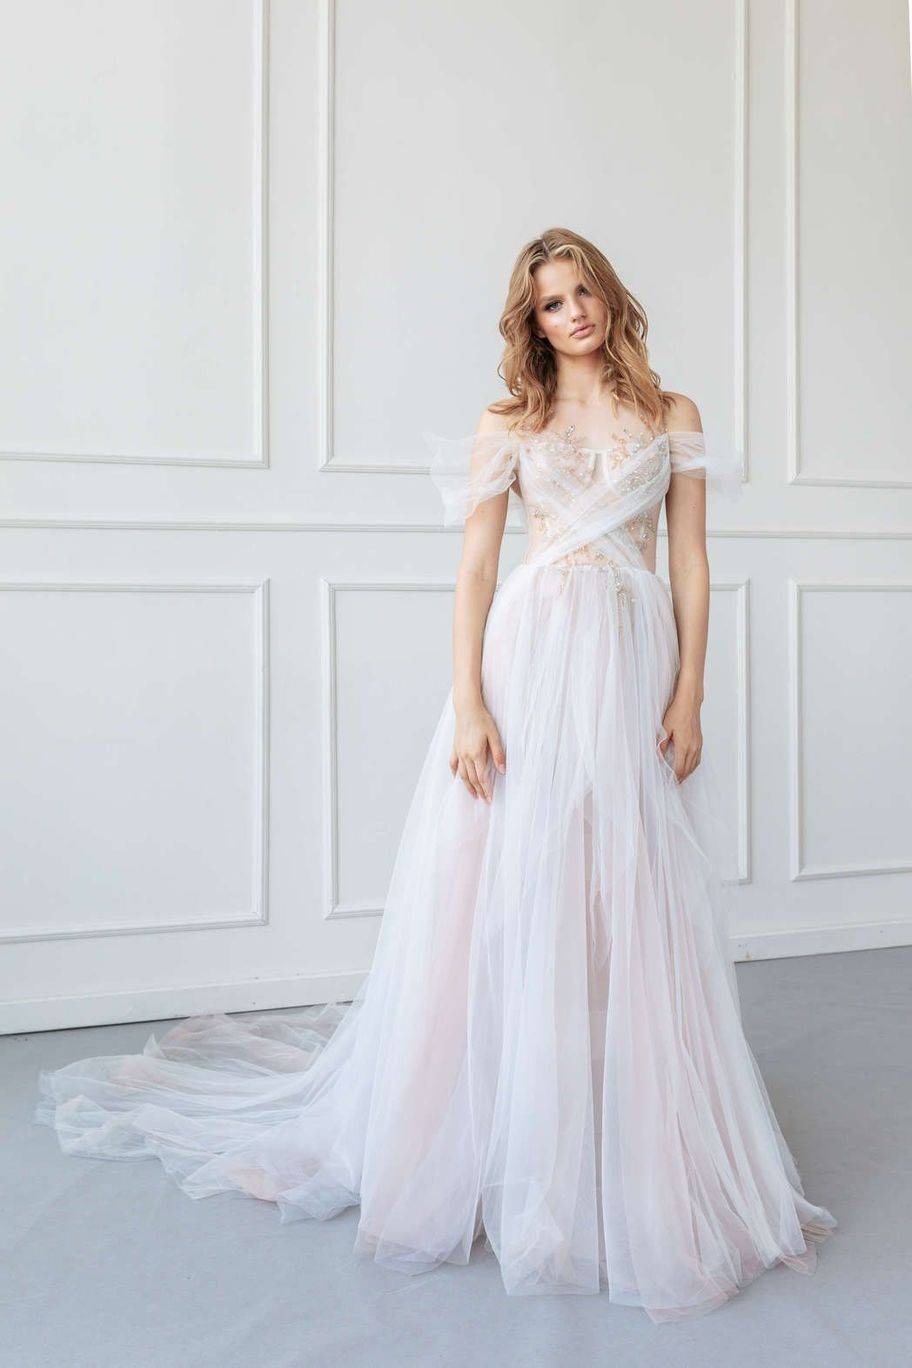 Красивейшие свадебные платья 2020-2021 года — фото новинки, обзор трендовый моделей